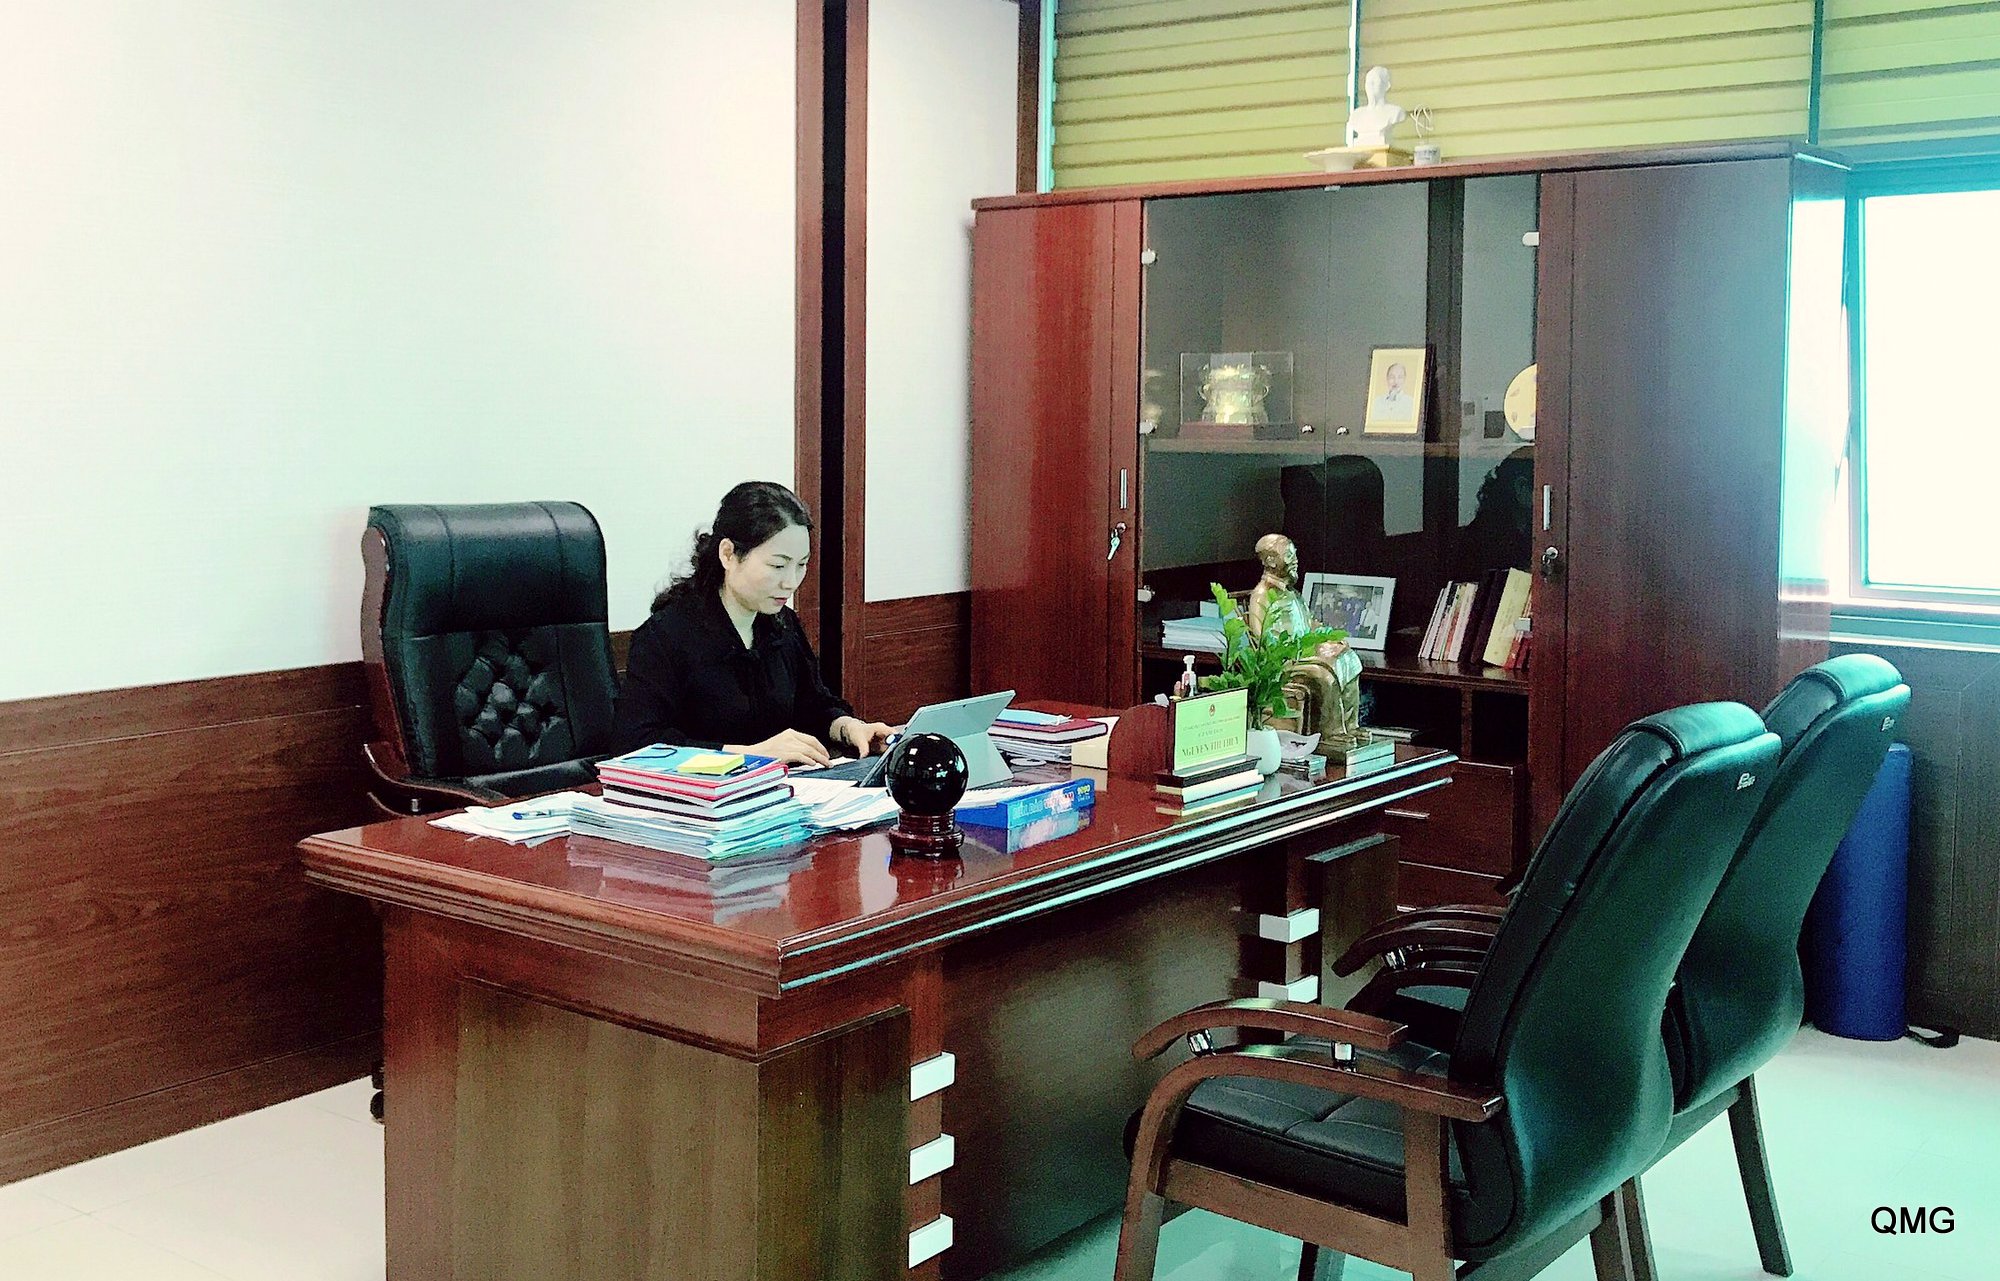 Giám đốc Sở GD&ĐT tỉnh thường trực tại văn phòng cơ quan, điều hành hoạt động của Sở qua hệ thống CNTT.